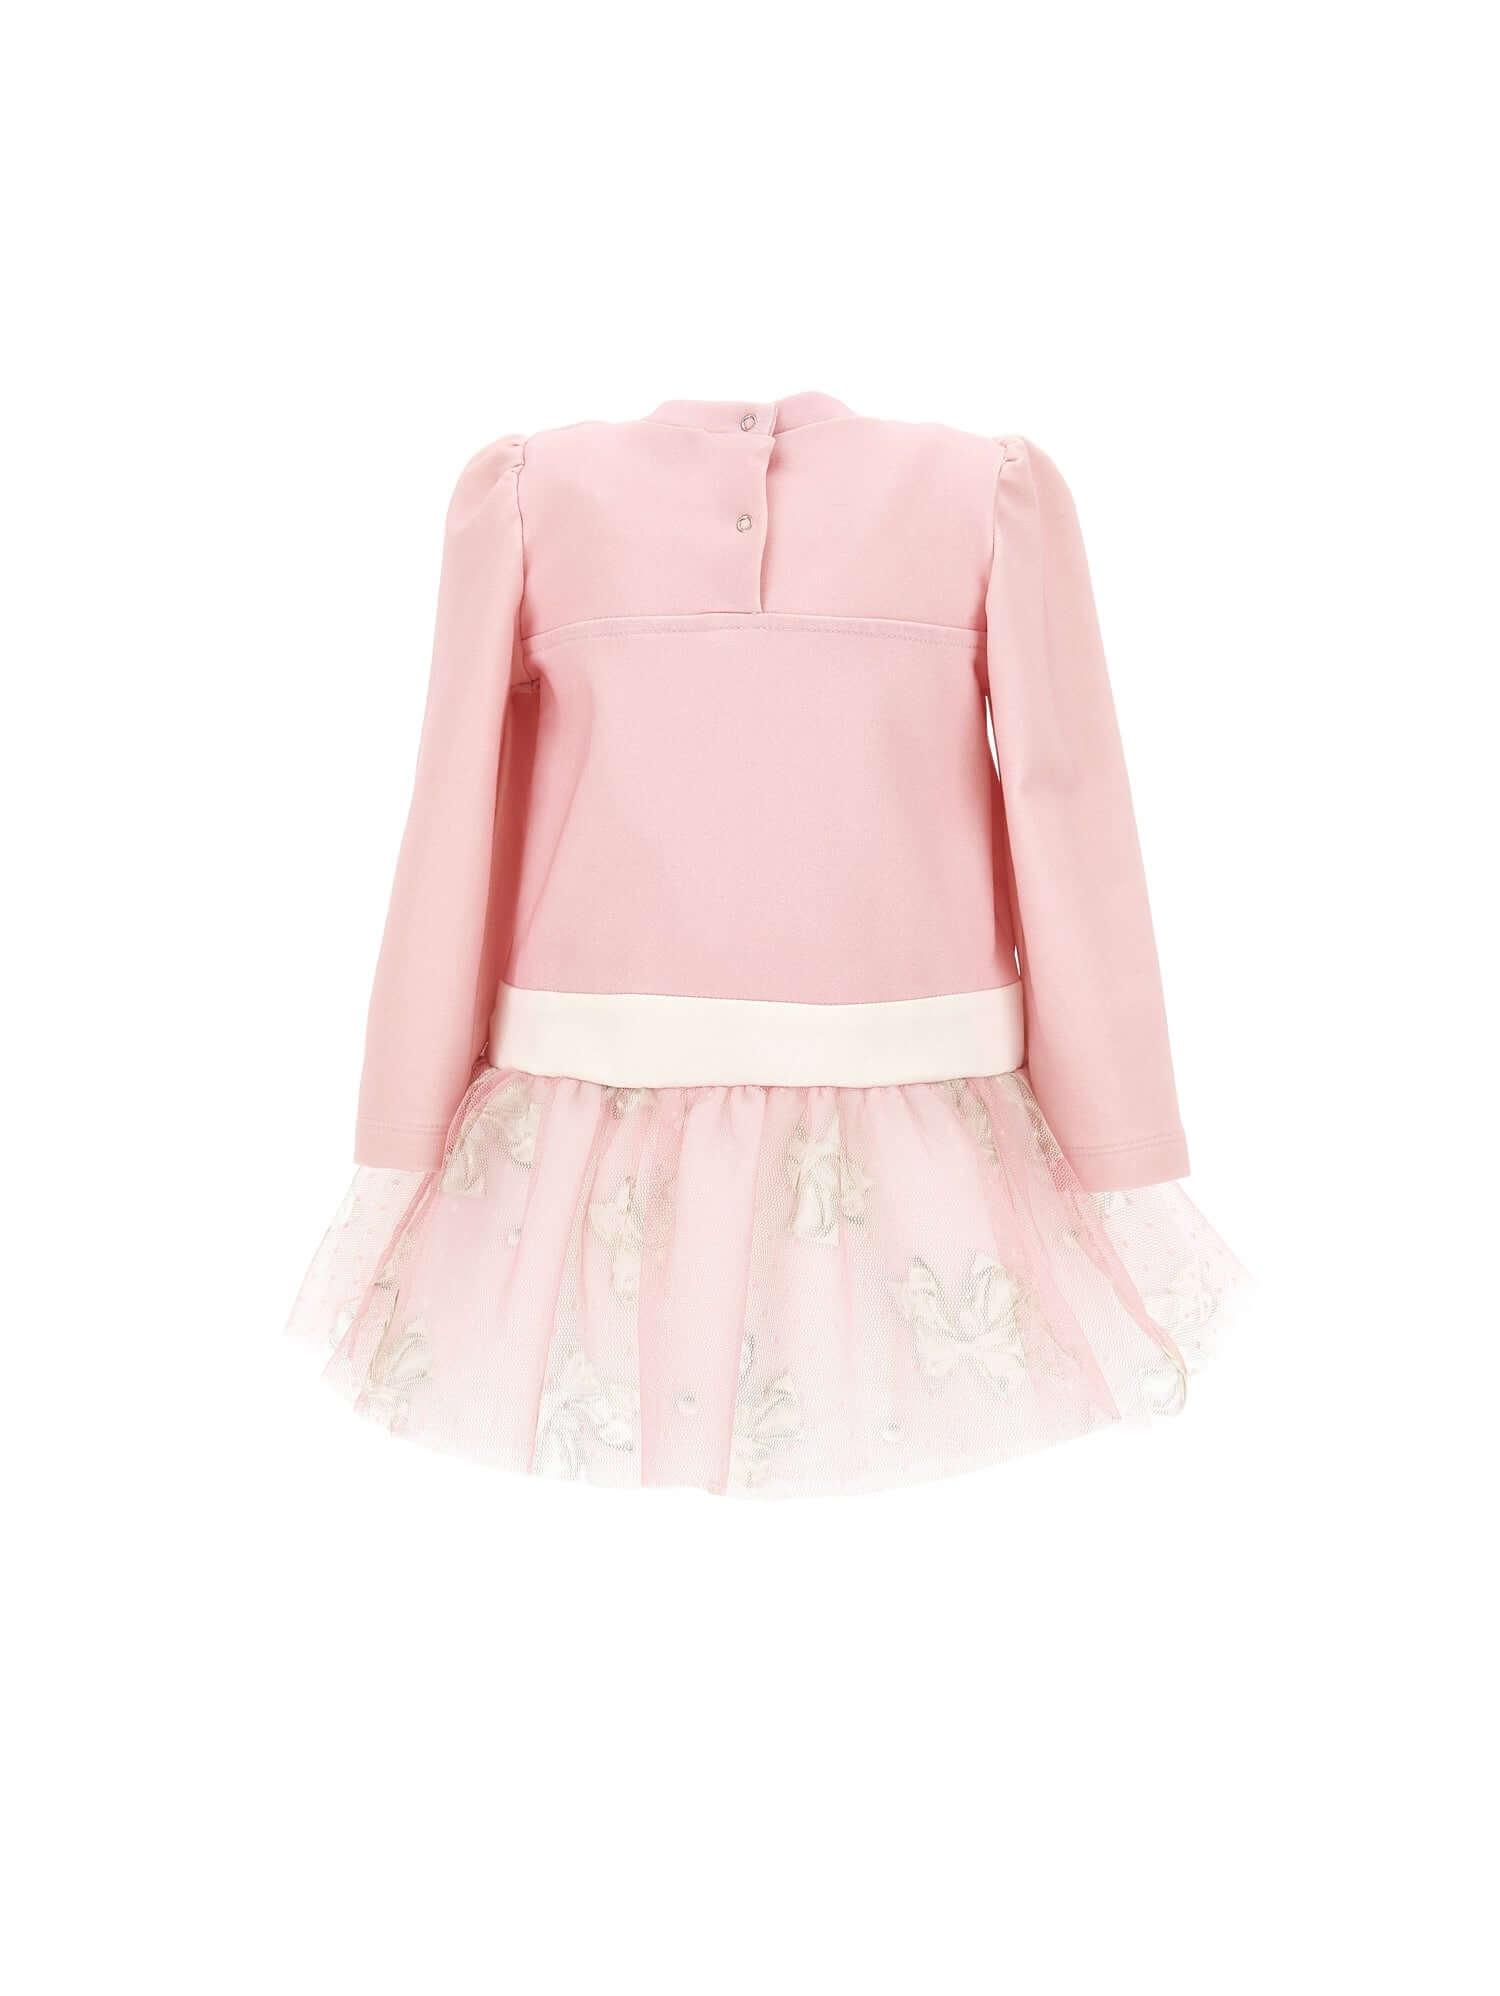 Monnalisa Girls Pink Tulle Dress